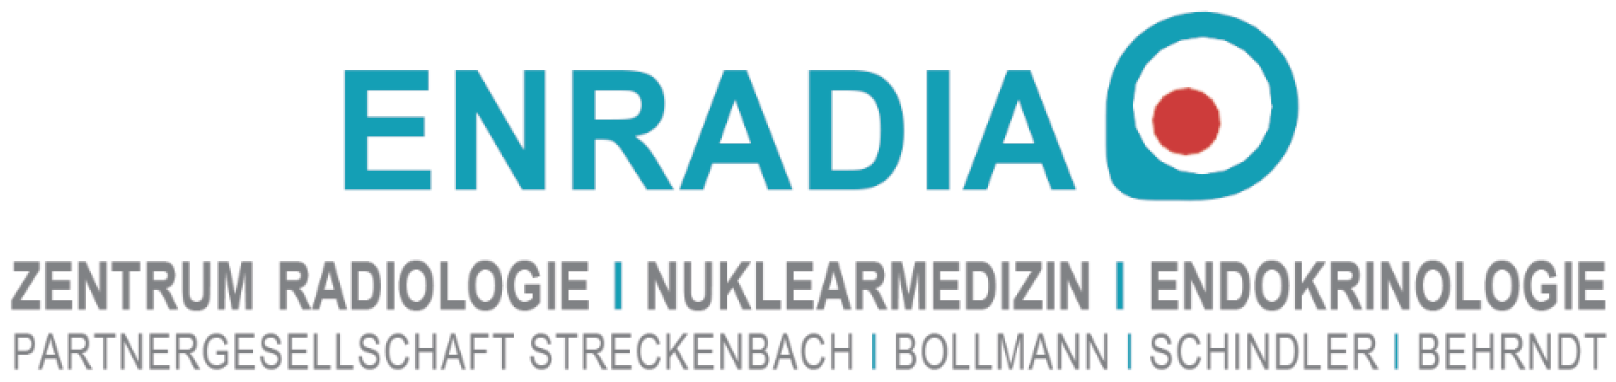 ENRADIA Zentrum Radiologie Nuklearmedizin Endikrinologie Partnergesellschaft Streckenbach Bollmann Schindler Behrndt 